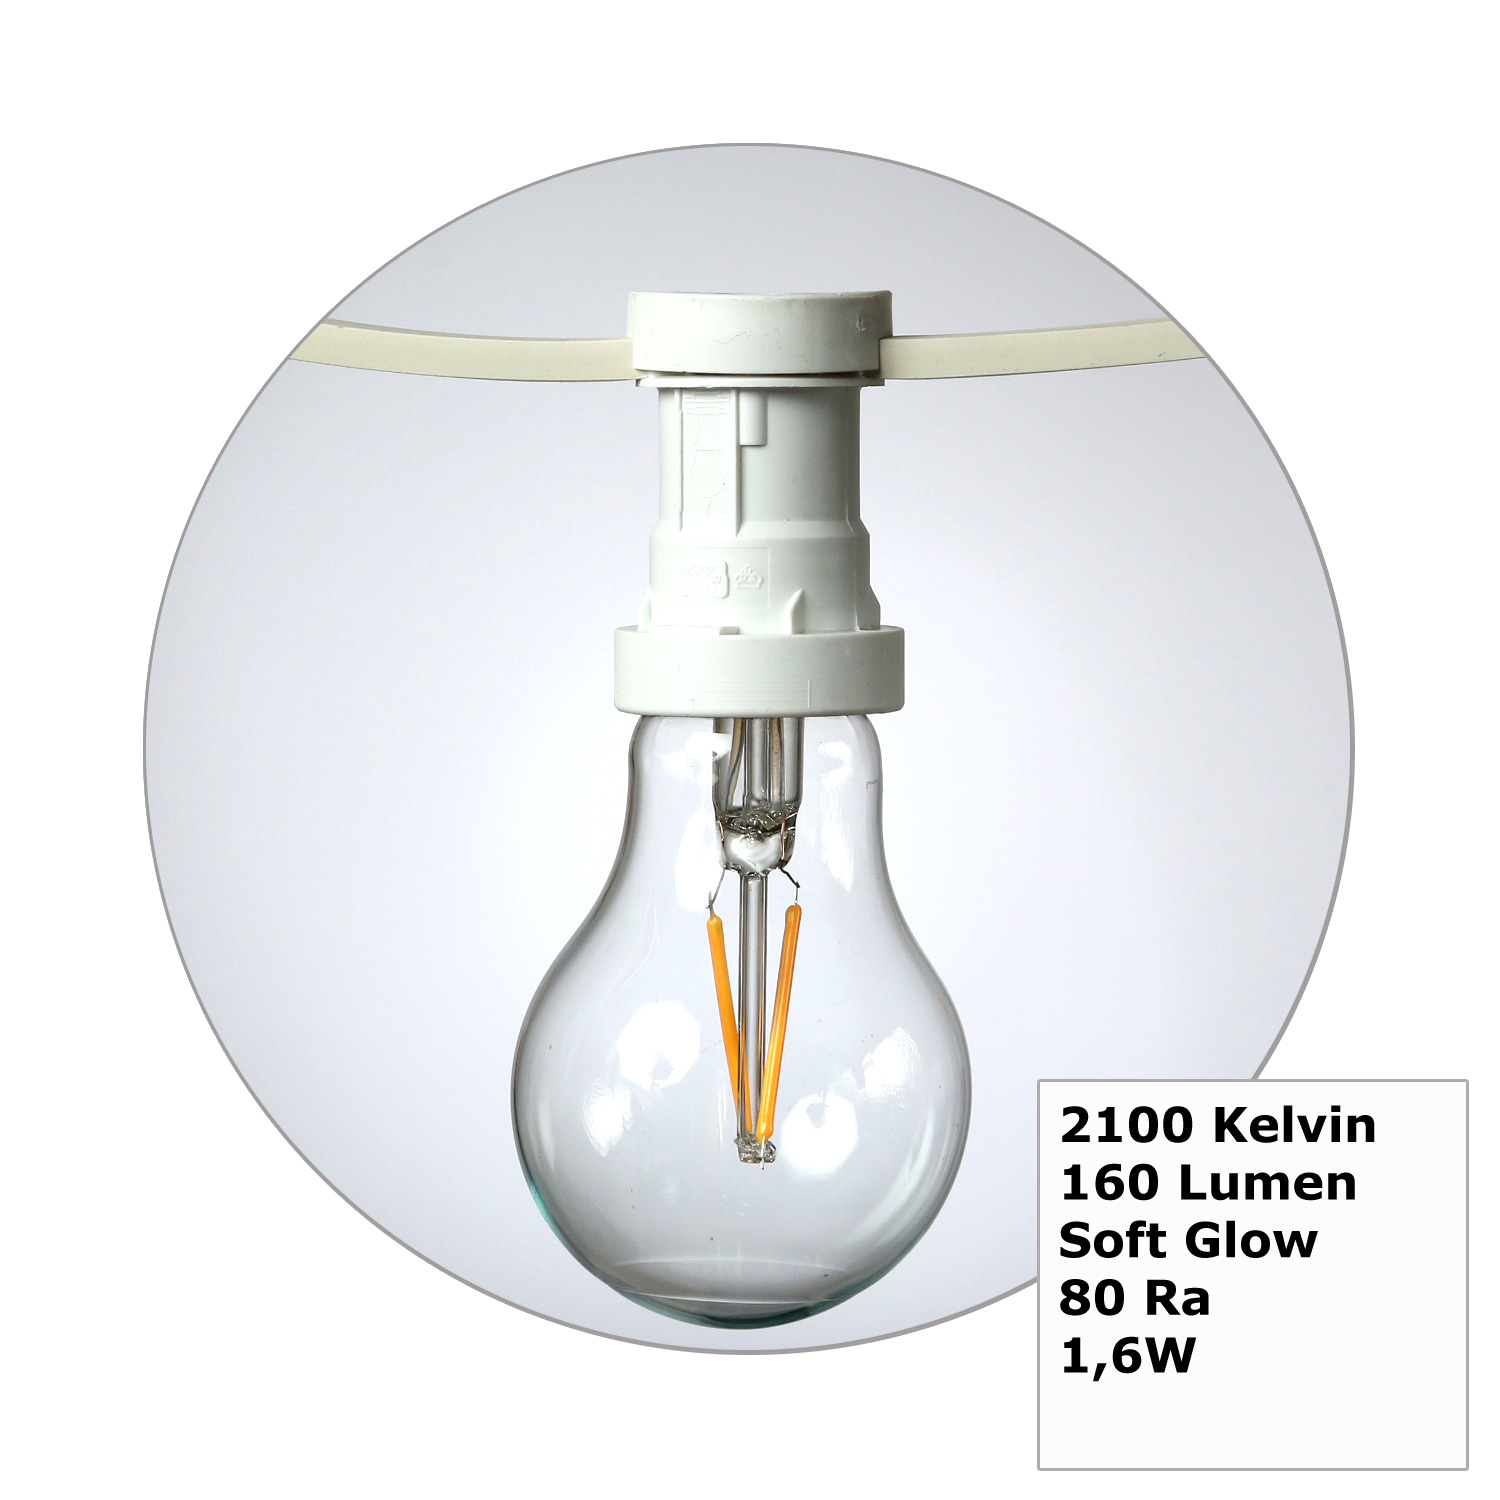 Illu-/Partylichterkette 20m - Außenlichterkette weiß - Made in Germany- 30 Edison LED Filamentlampen